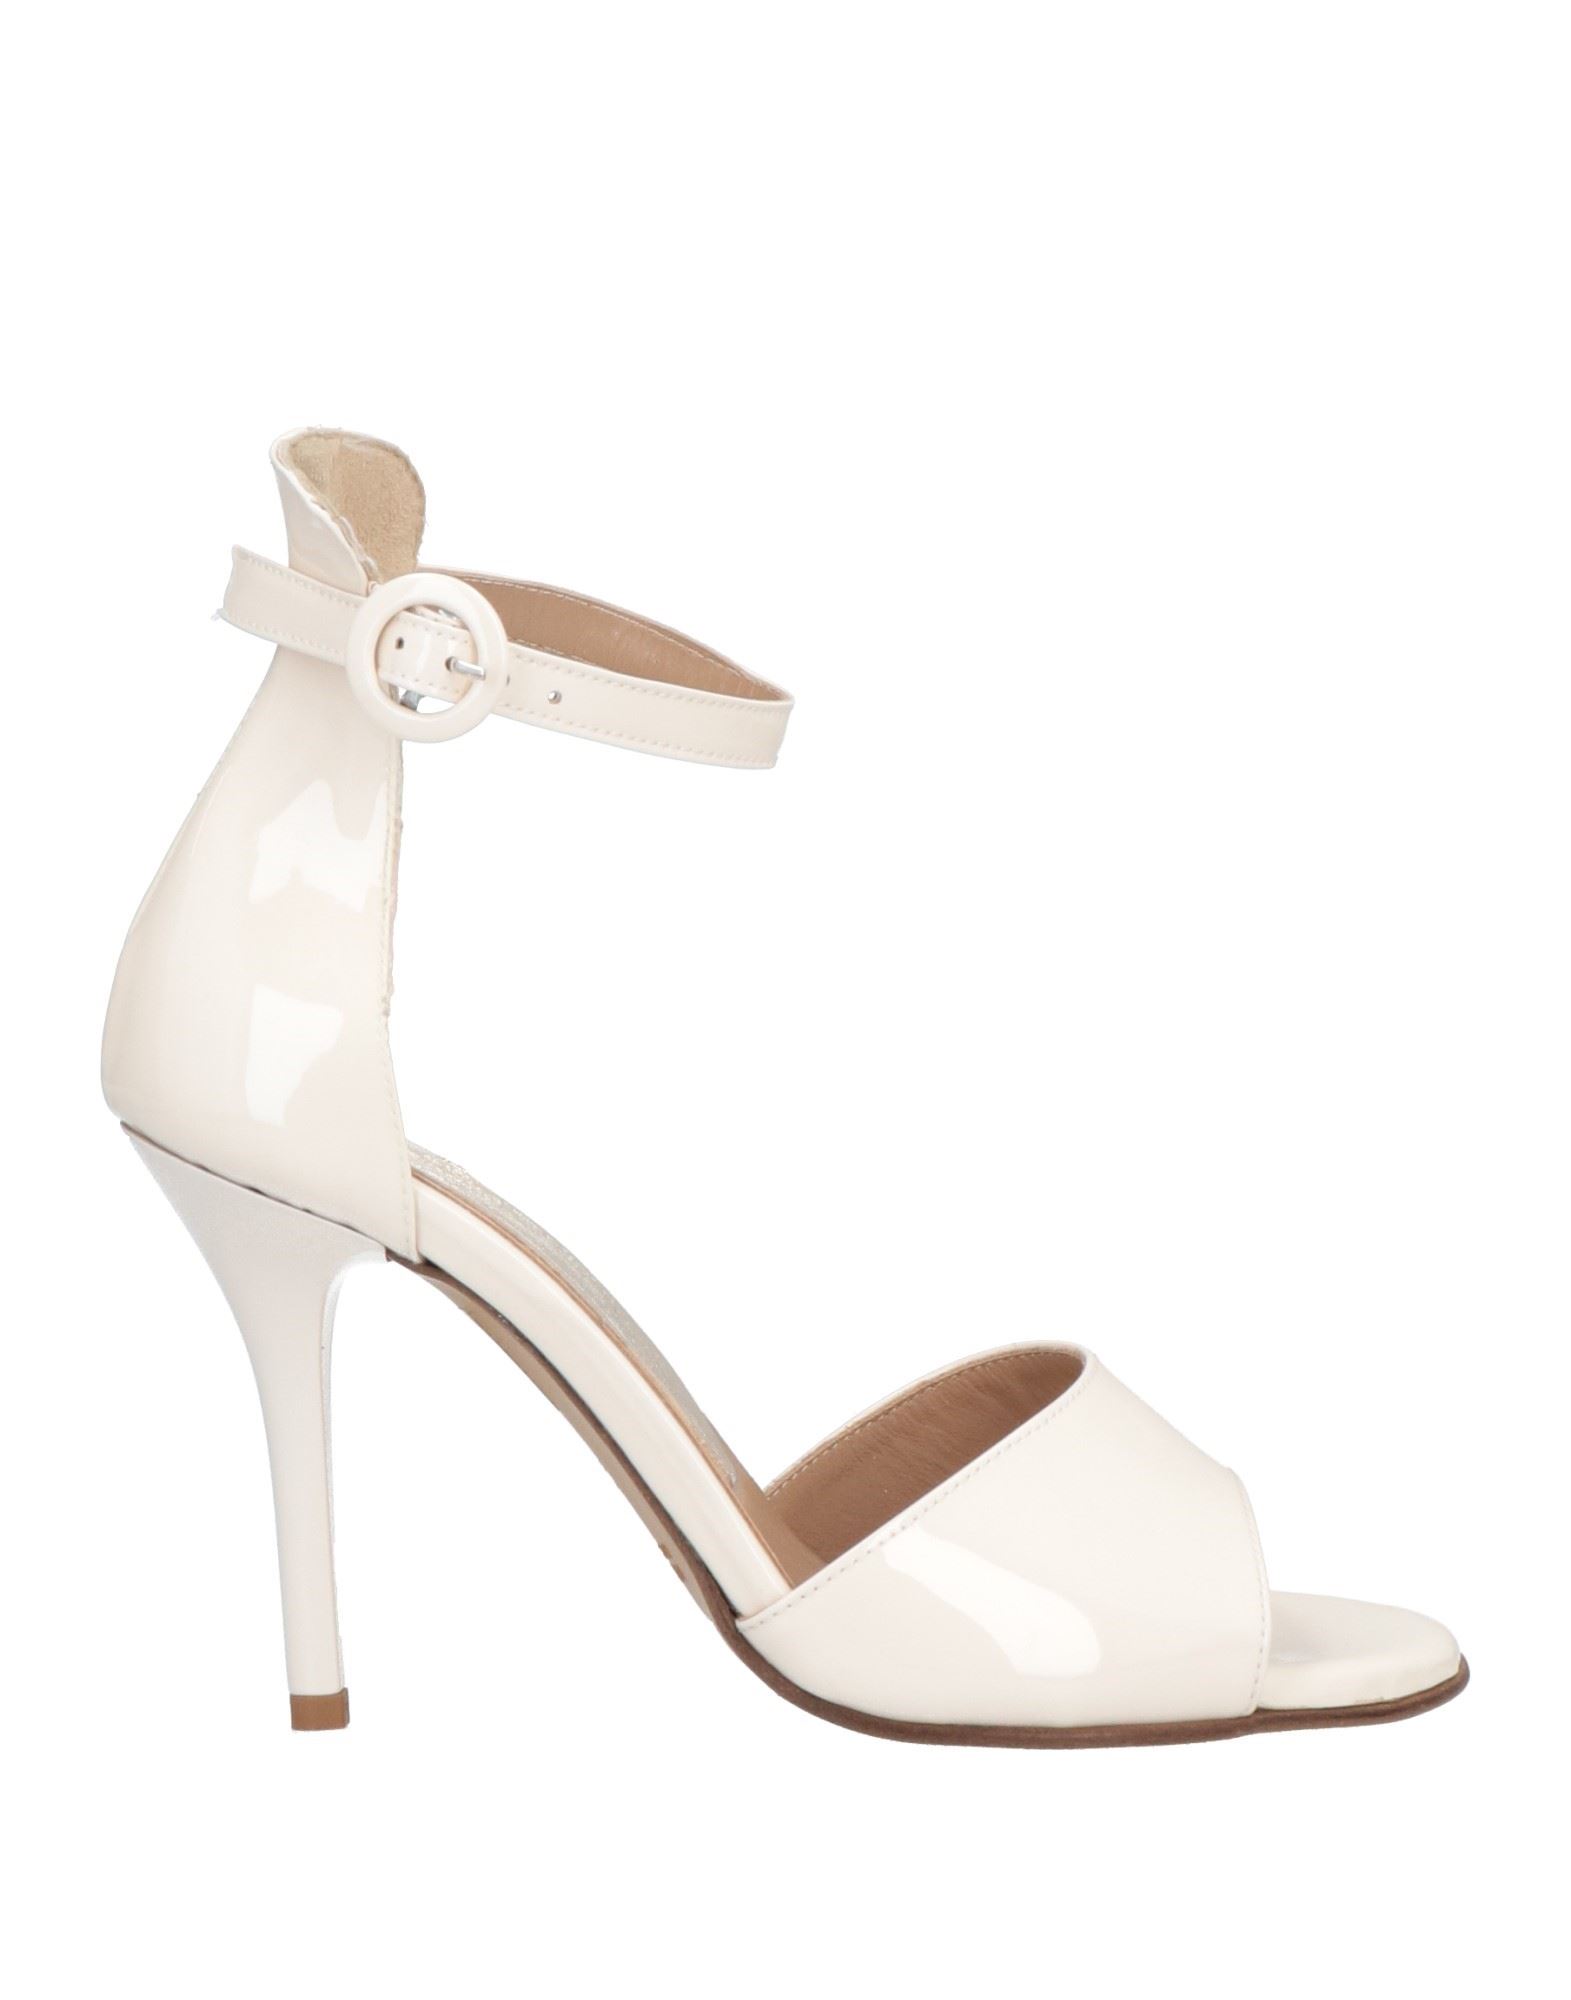 Loretta Pettinari Sandals In White